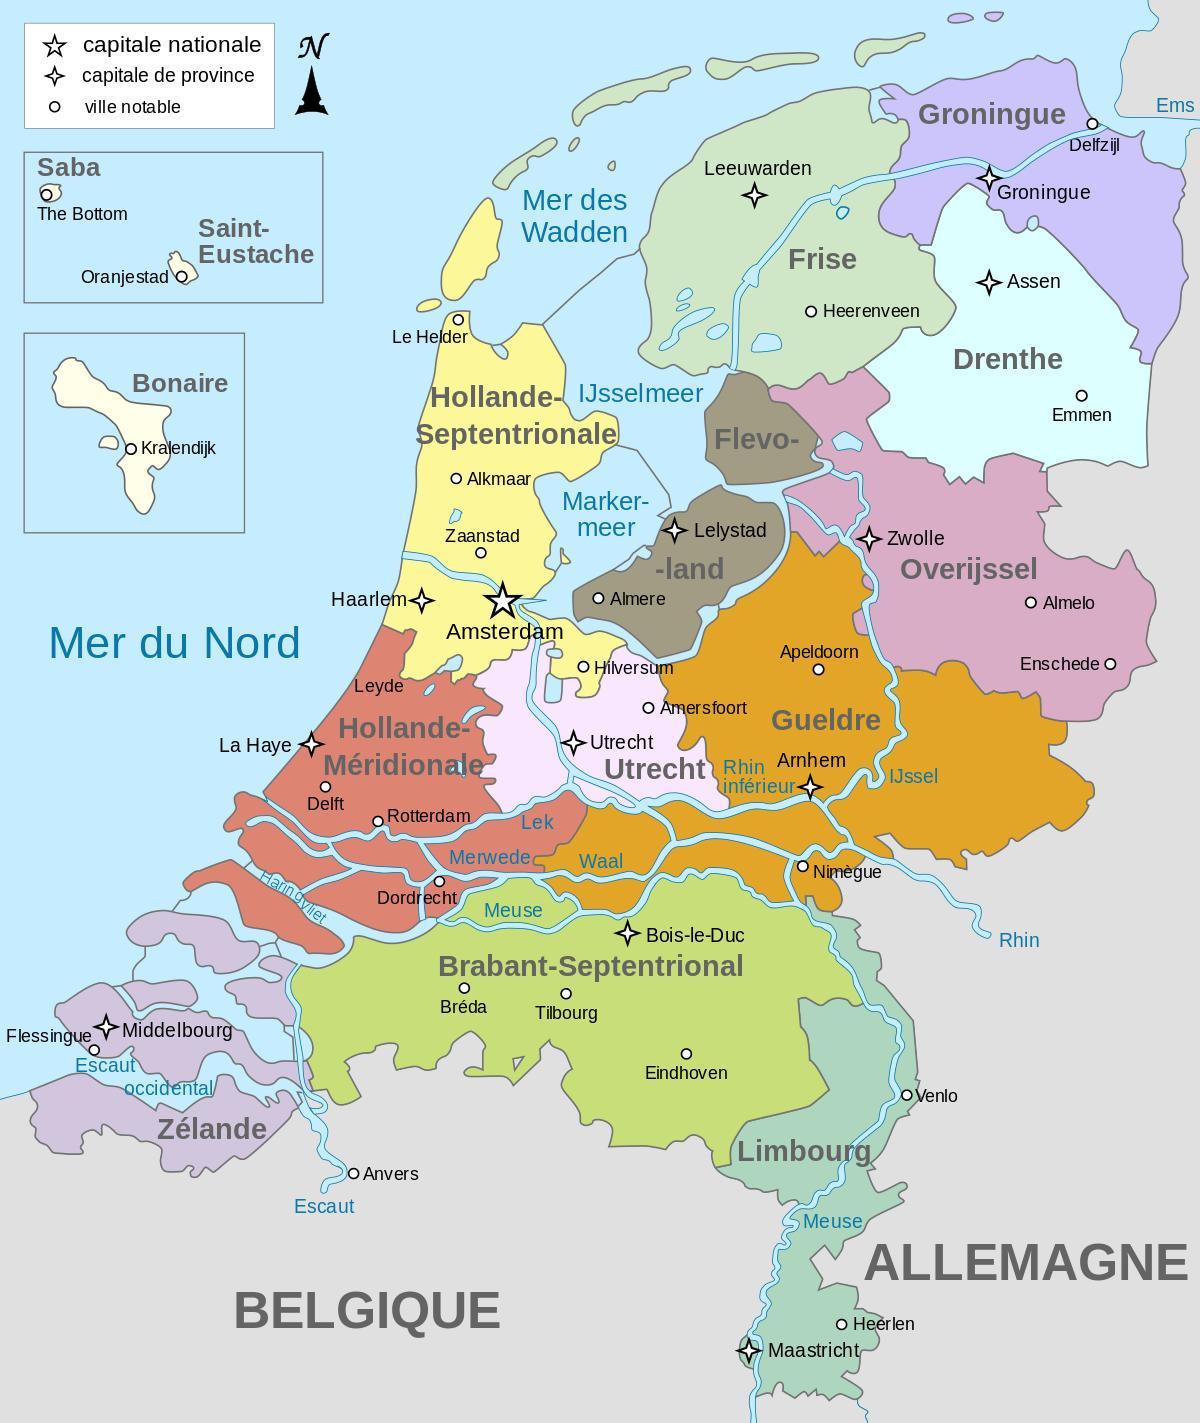 Mappa delle zone dei Paesi Bassi